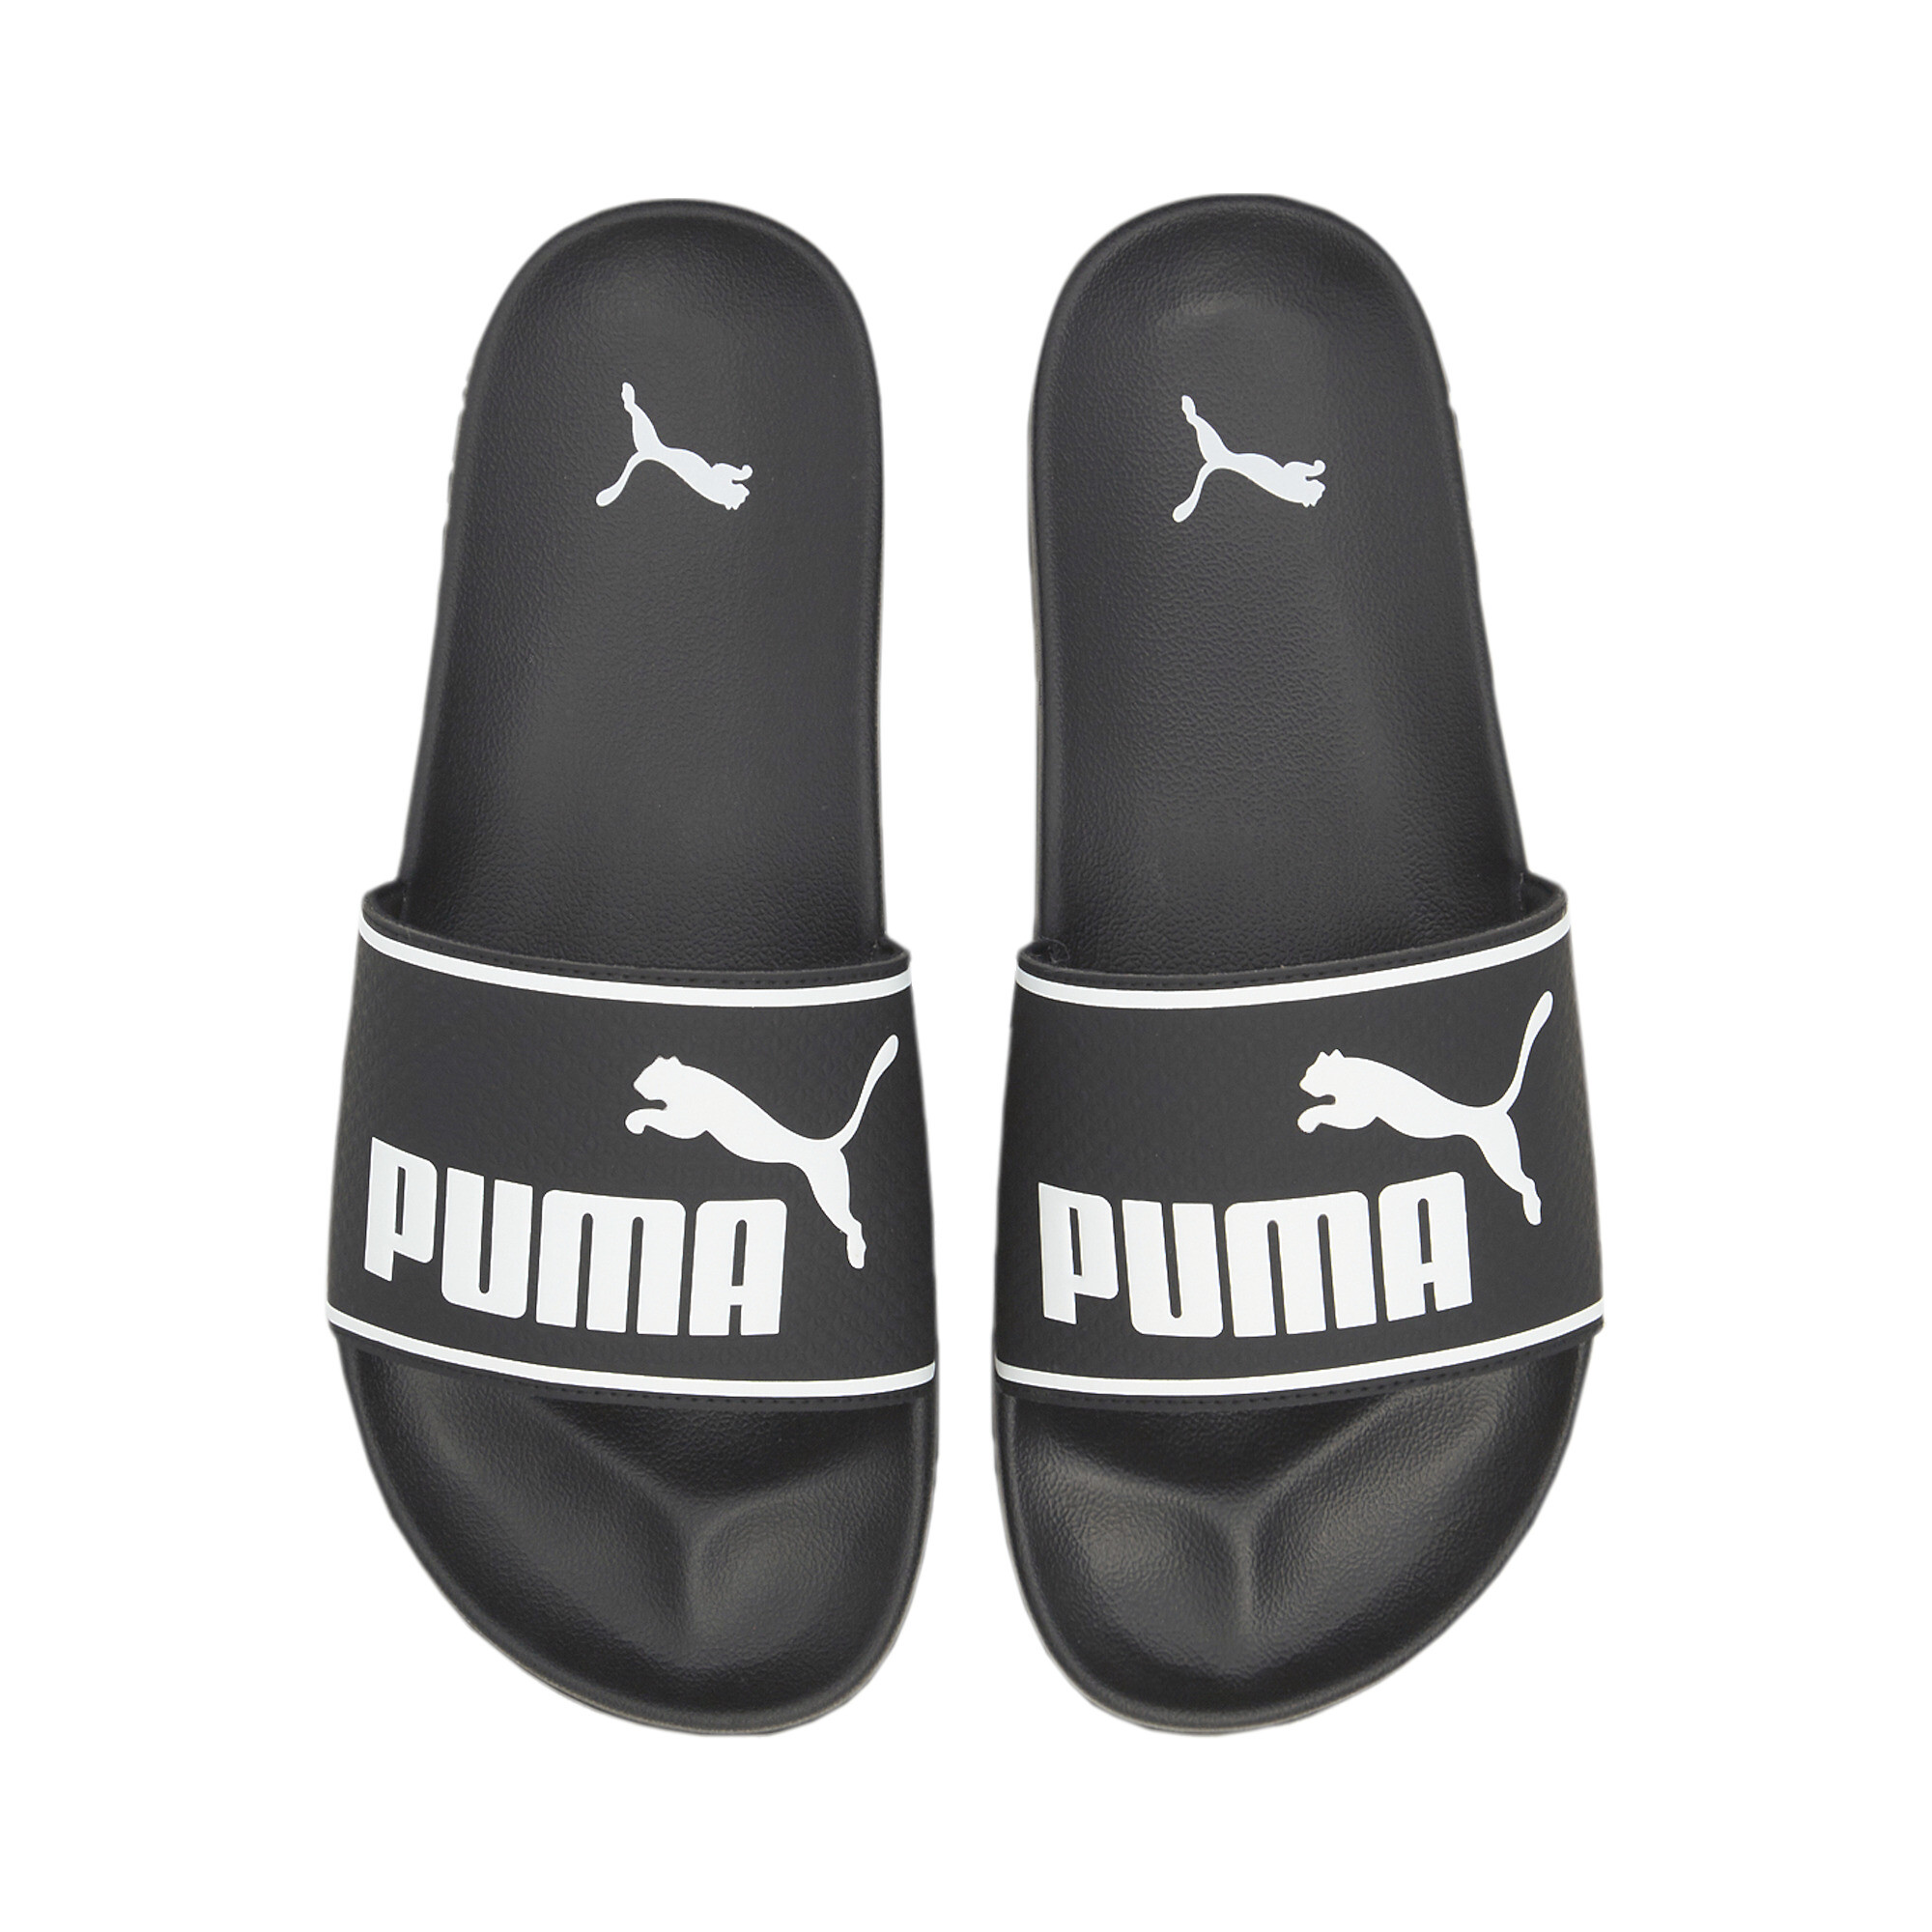 Men's PUMA Leadcat 2.0 Sandals In Black, Size EU 44.5